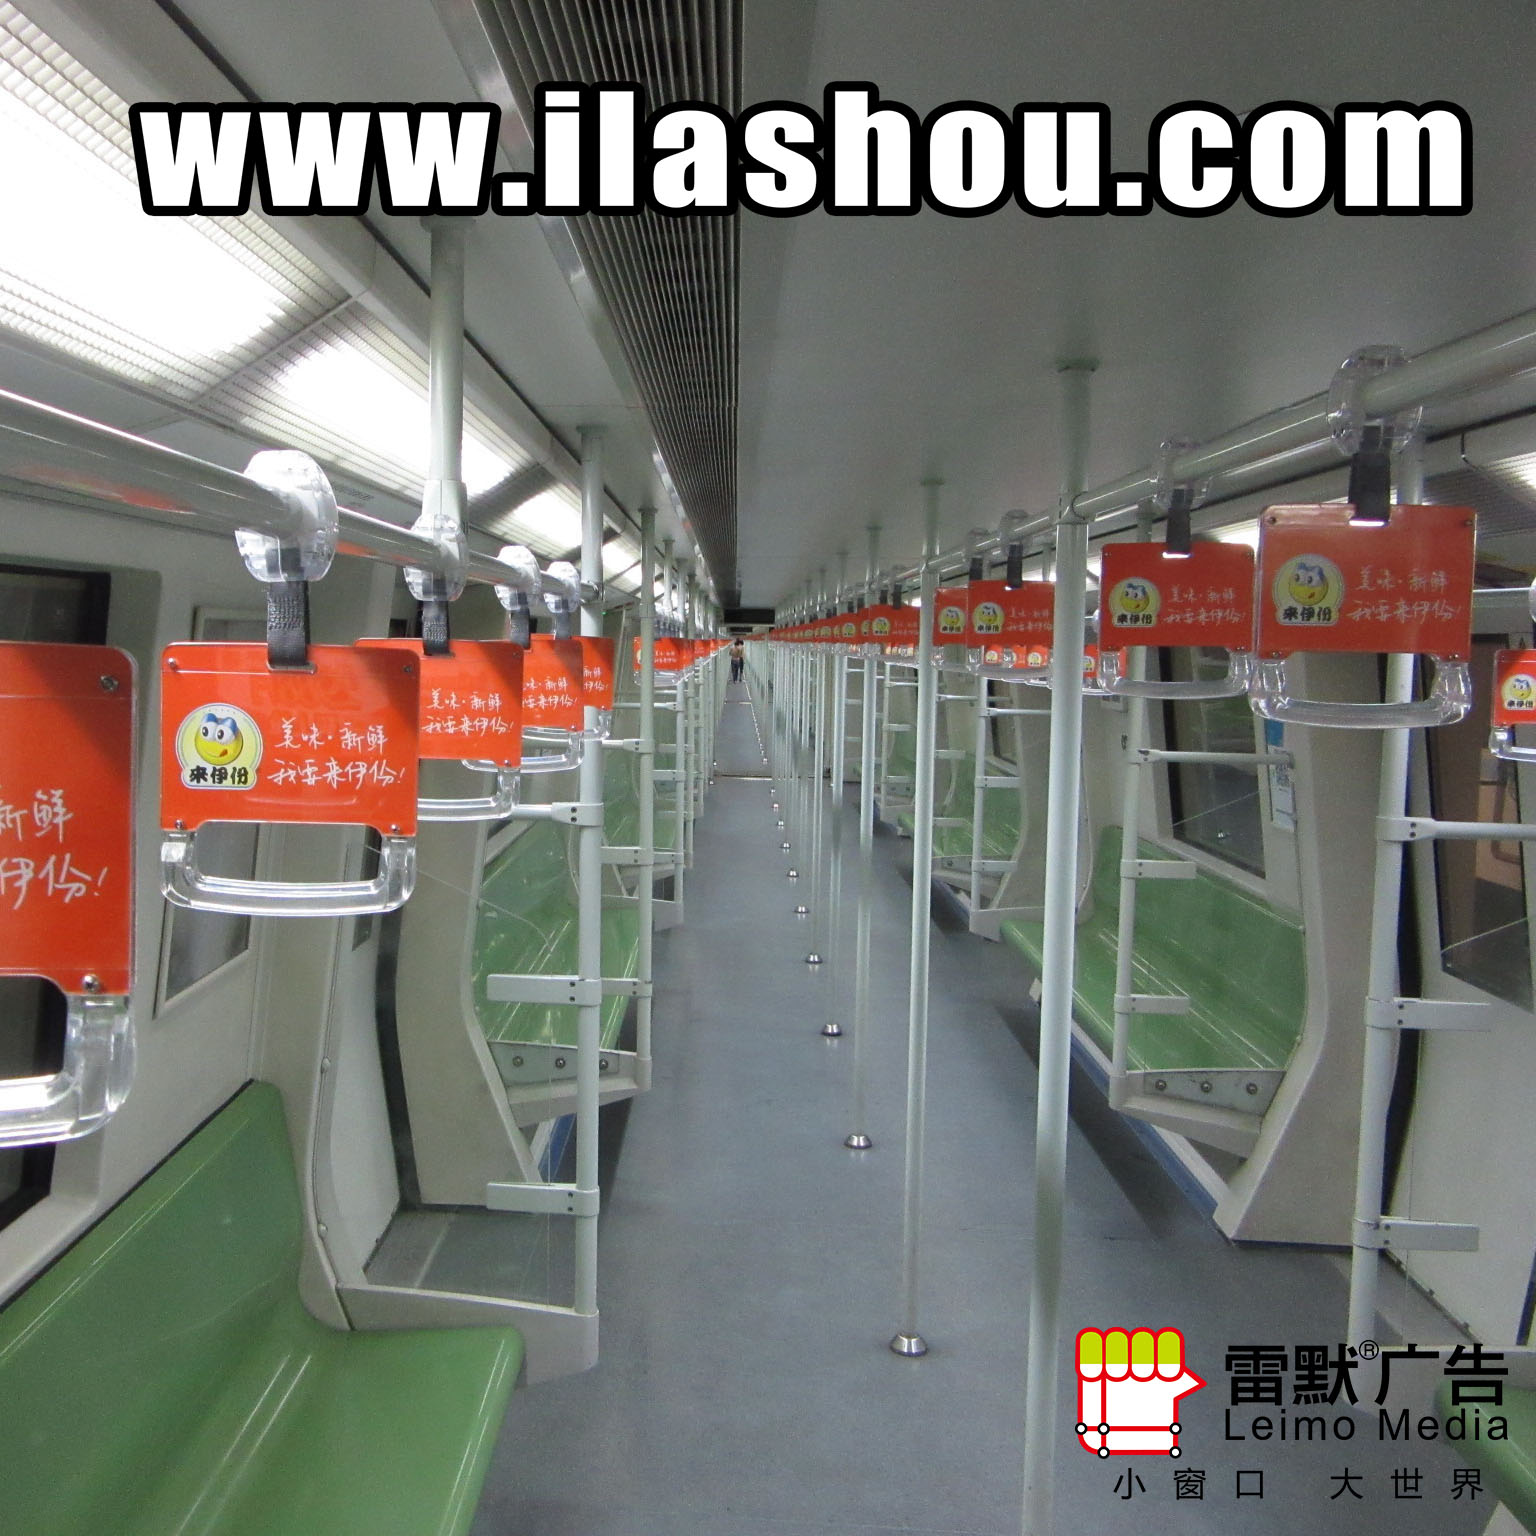 上海地铁传媒广告 上海地铁拉手传媒广告图片